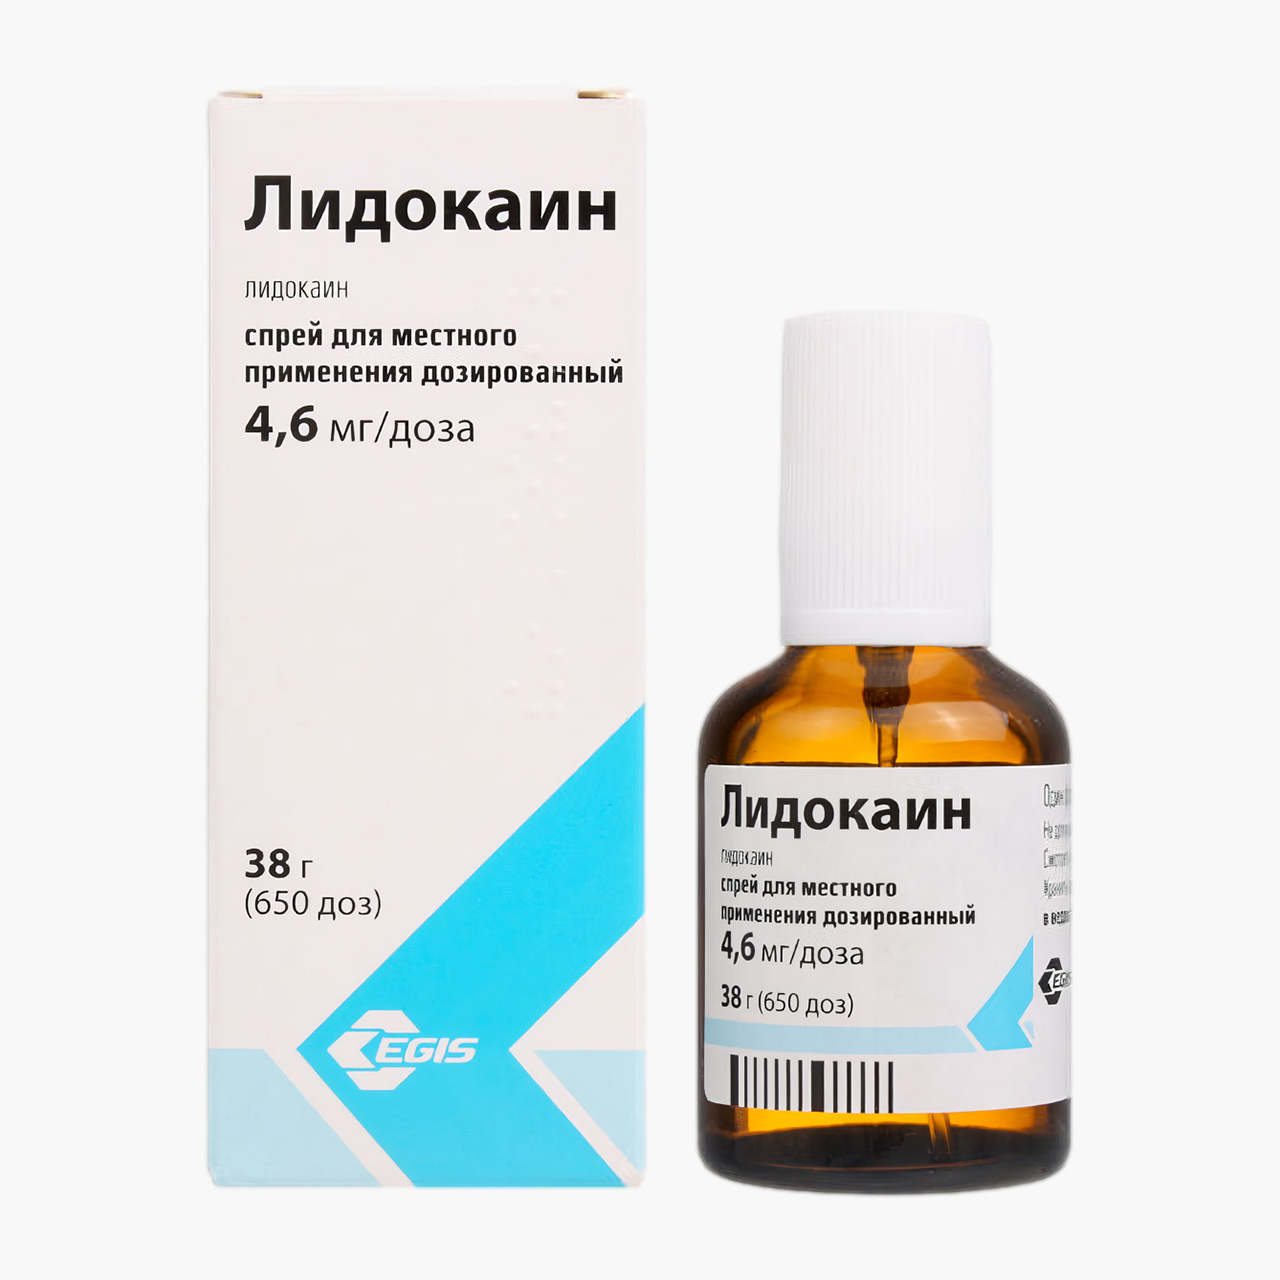 Спрей с лидокаином для местного применения от венгерского производителя «Эгис». Источник: eapteka.ru